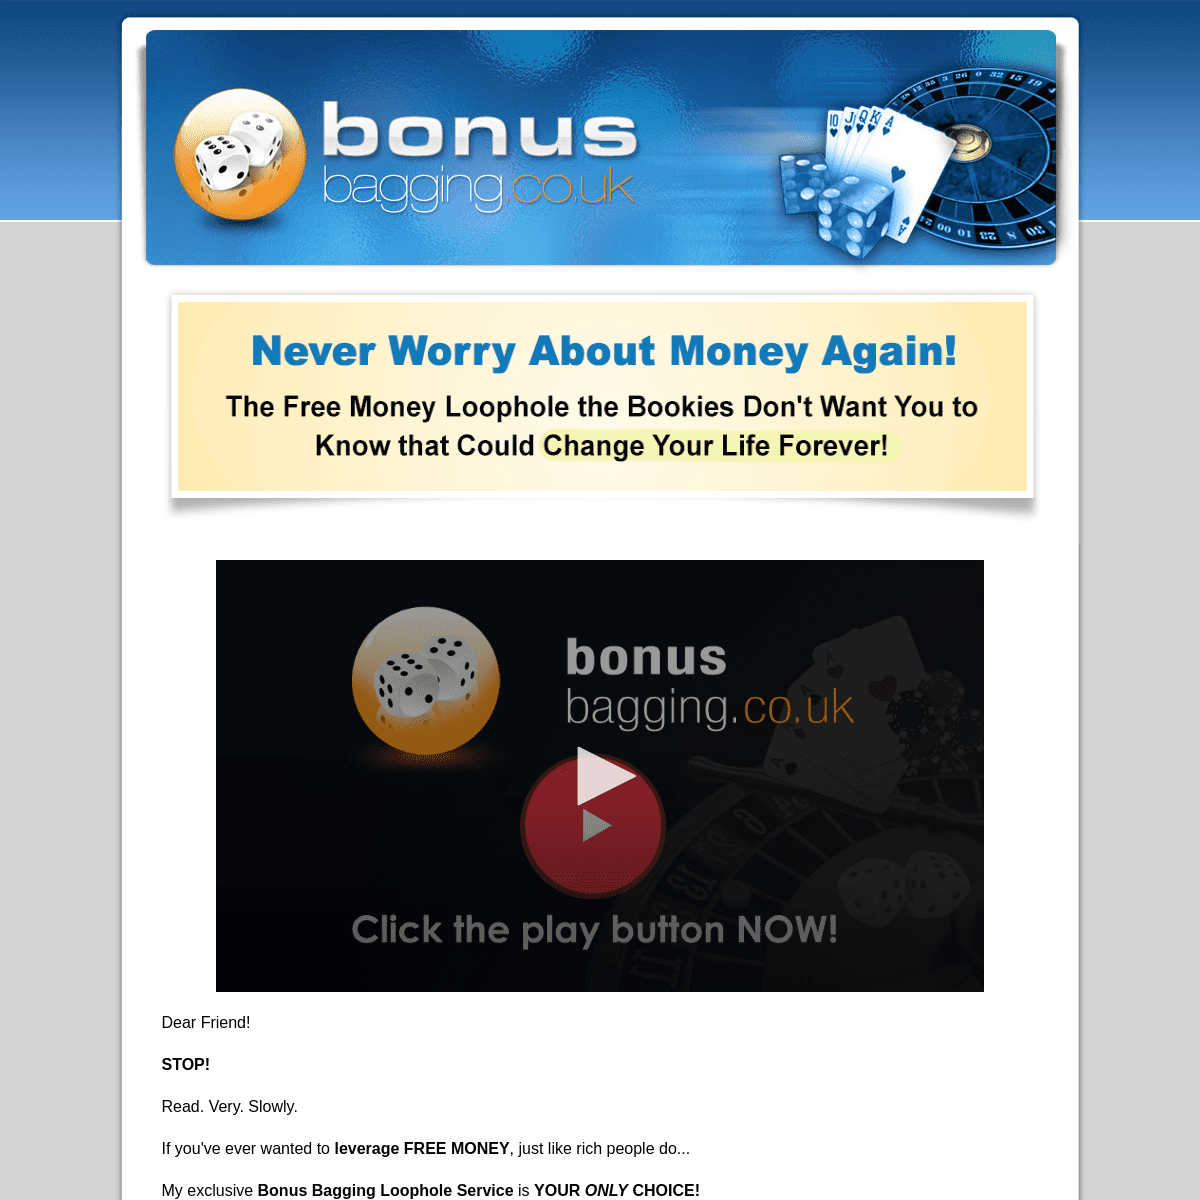 A complete backup of bonusbagging.co.uk